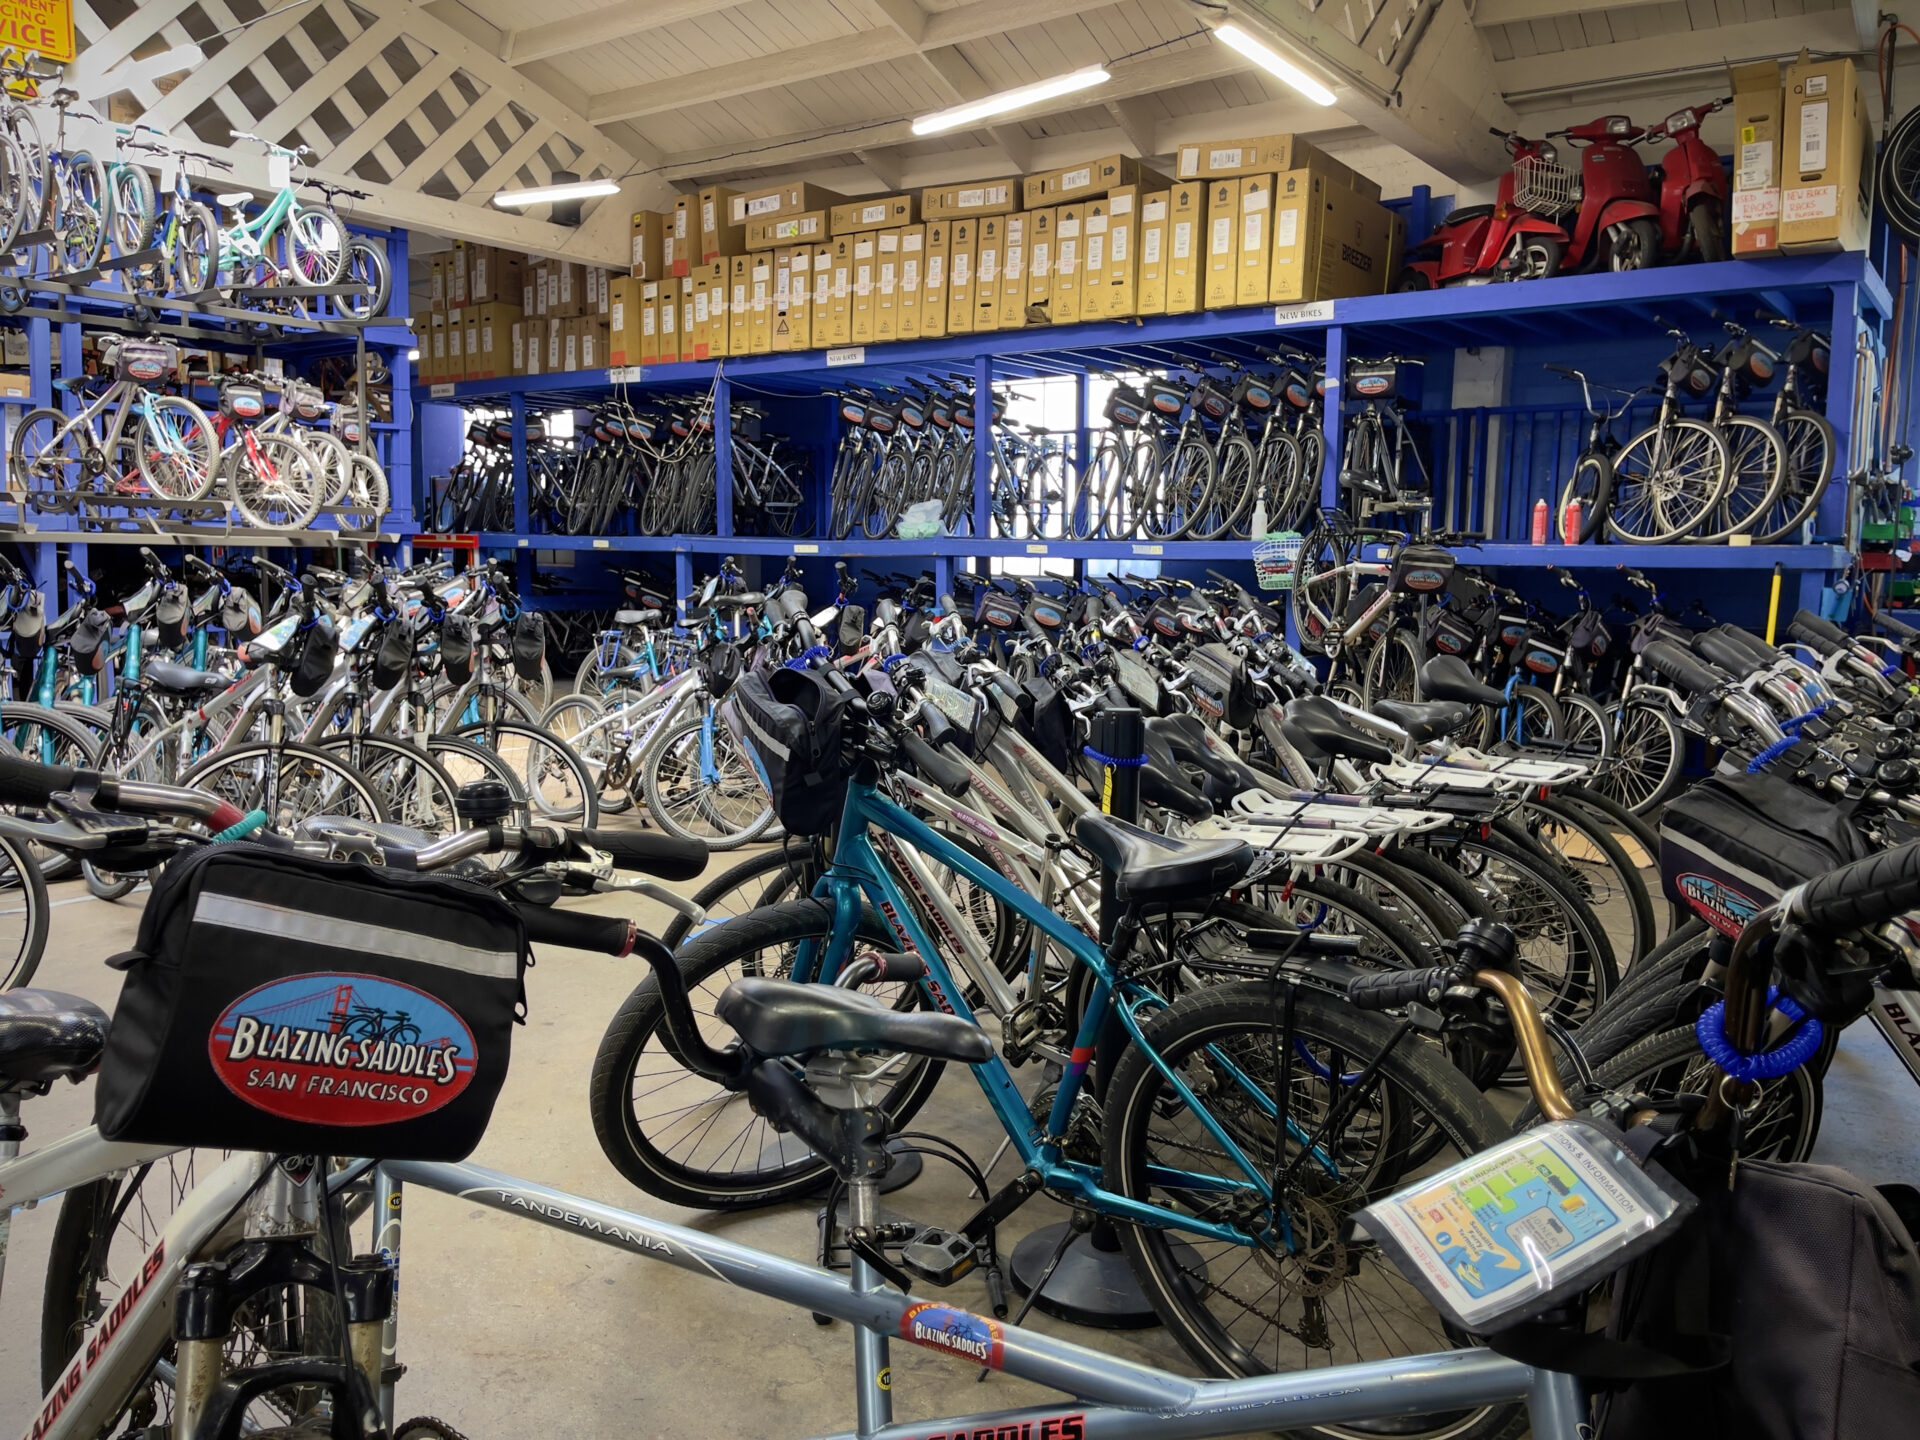 A room full of bikes